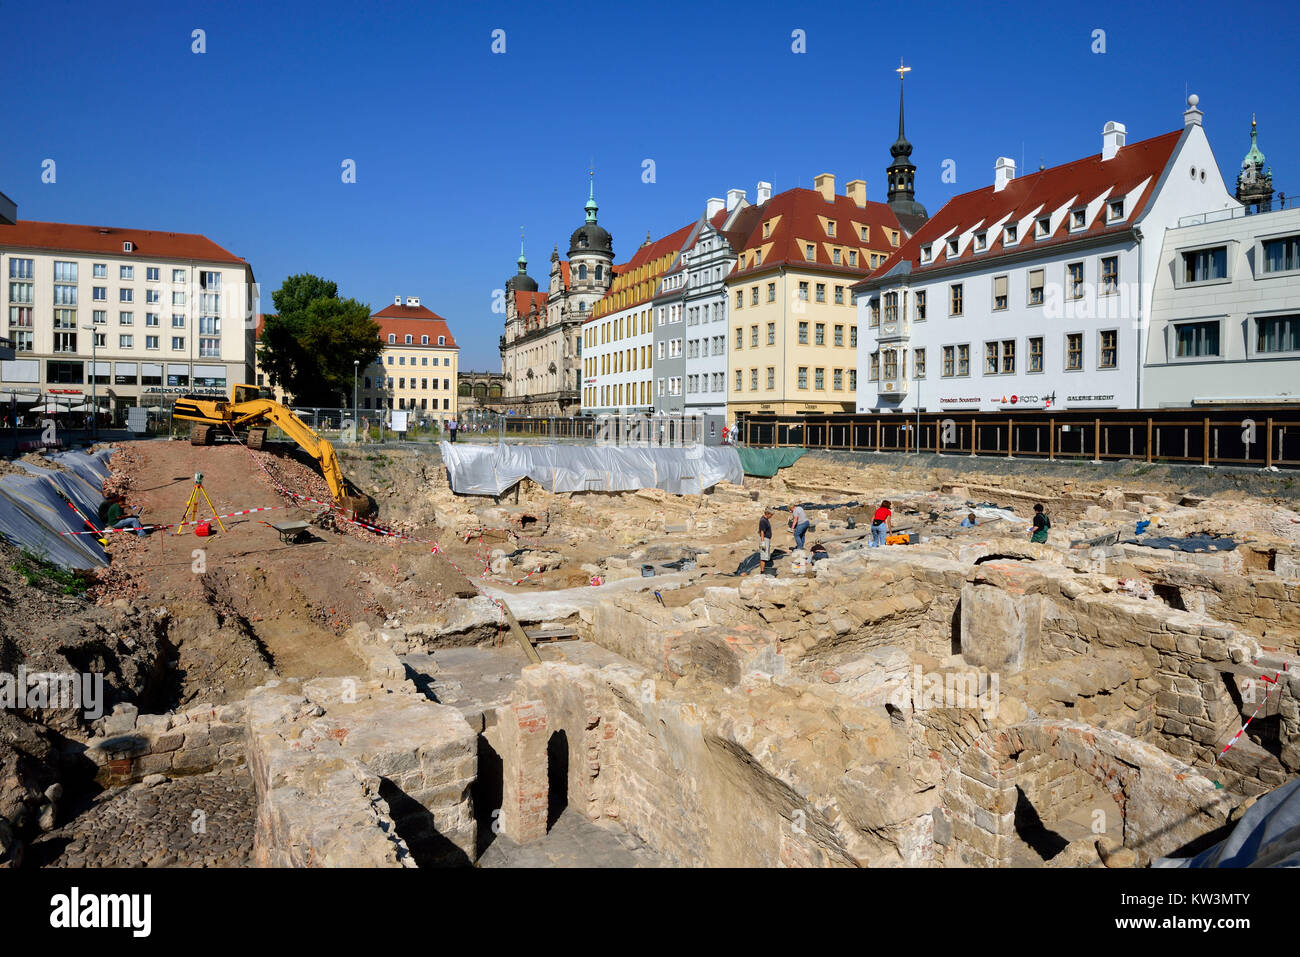 Scavo di Dresda Dresda, scavi archeologici nella Città Vecchia, Ausgrabung a Dresda, Archäologische Ausgrabungen in der Altstadt Foto Stock